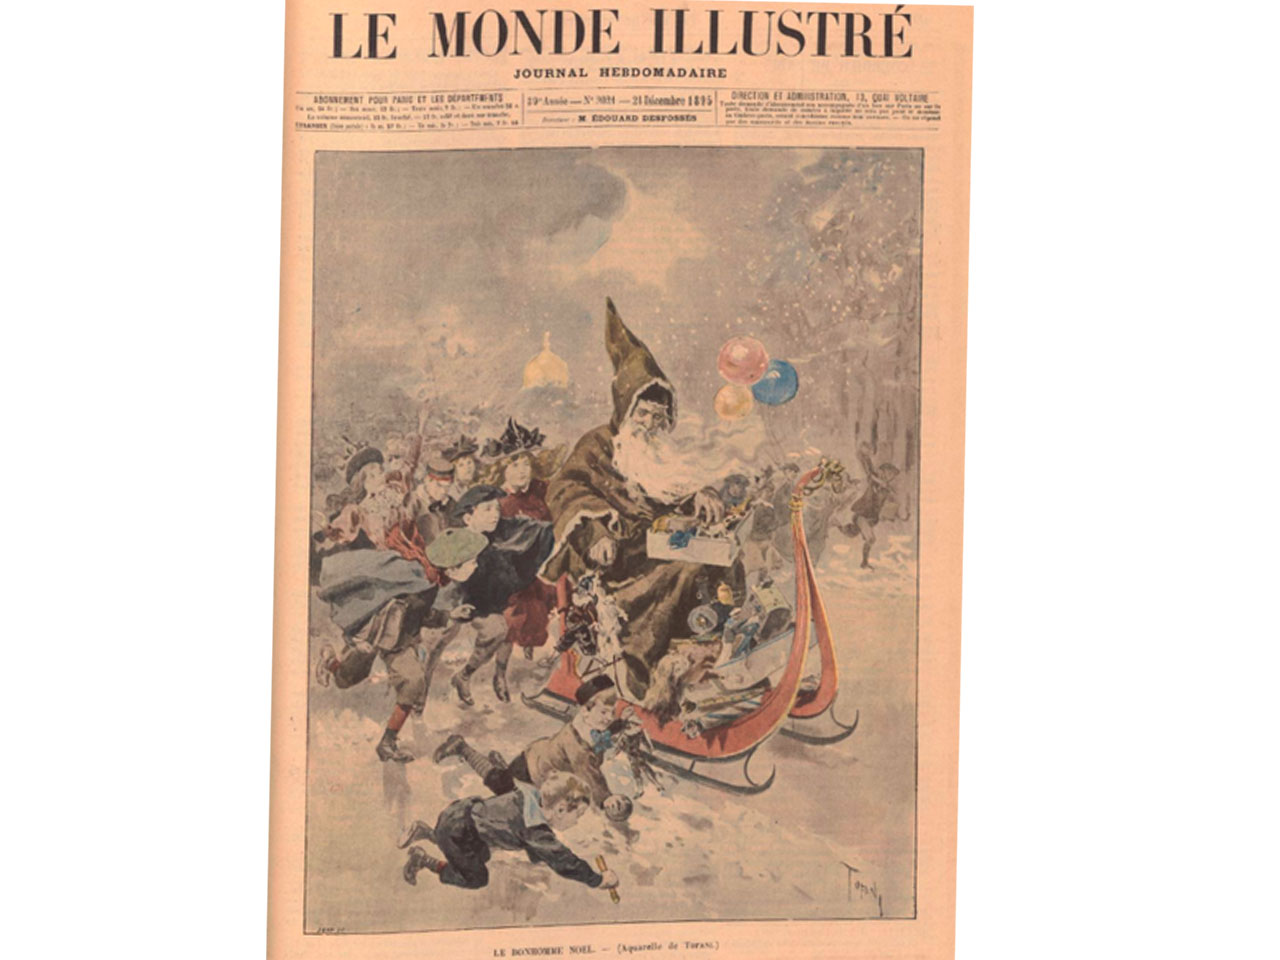 Première de couverture de "Le Monde illustré" du 21 décembre 1895.